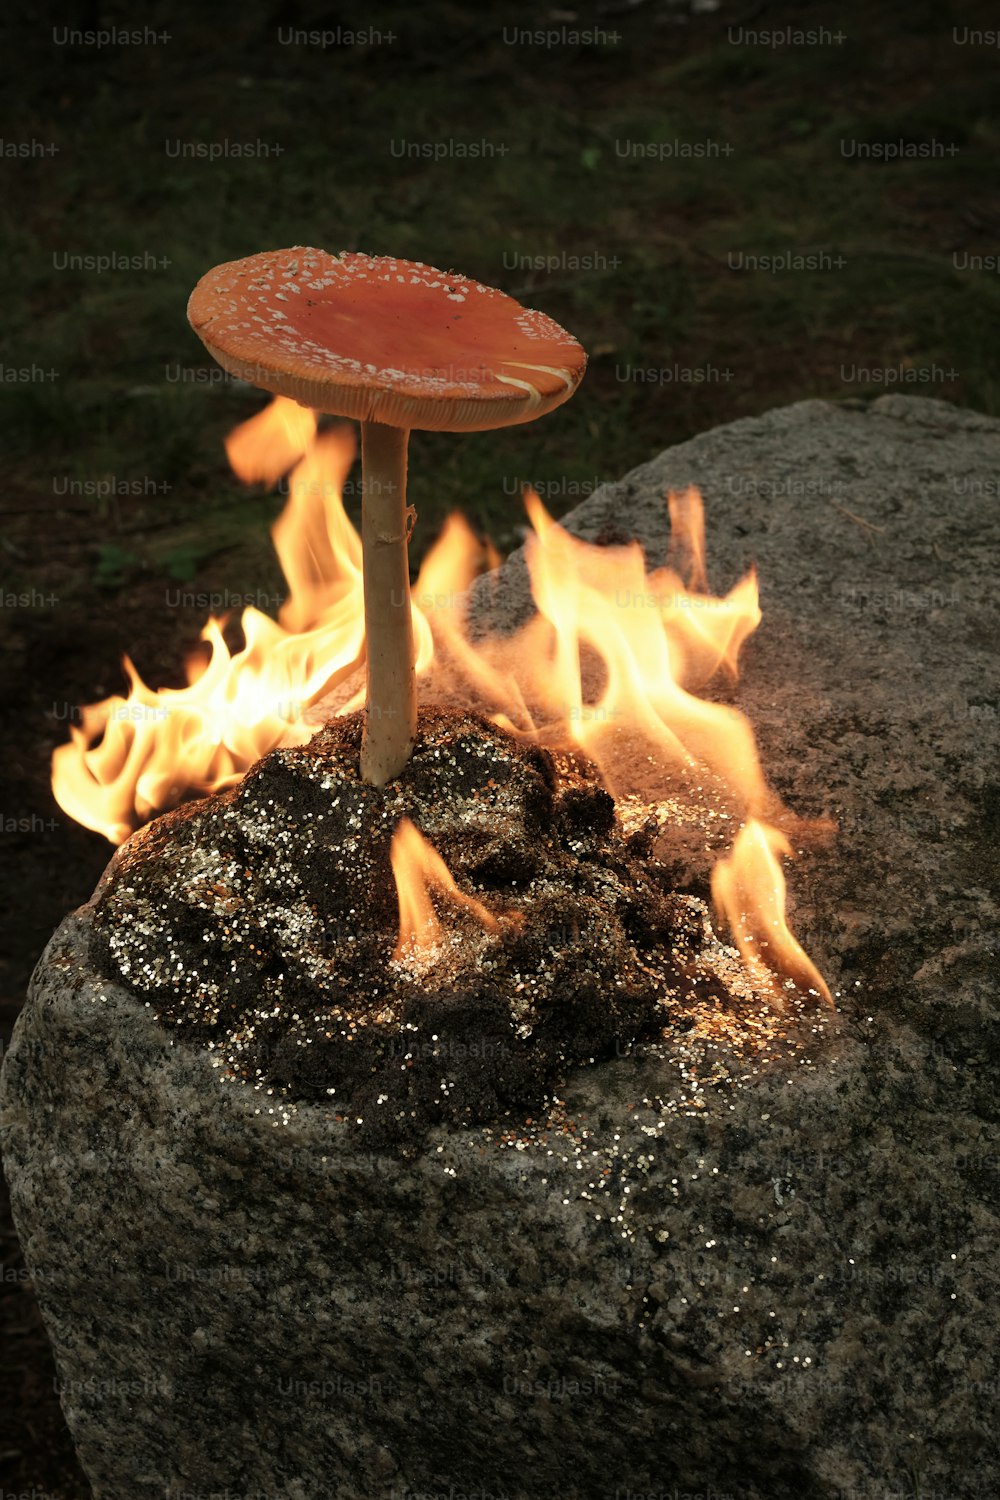 불 옆 바위 위에 앉아 있는 버섯